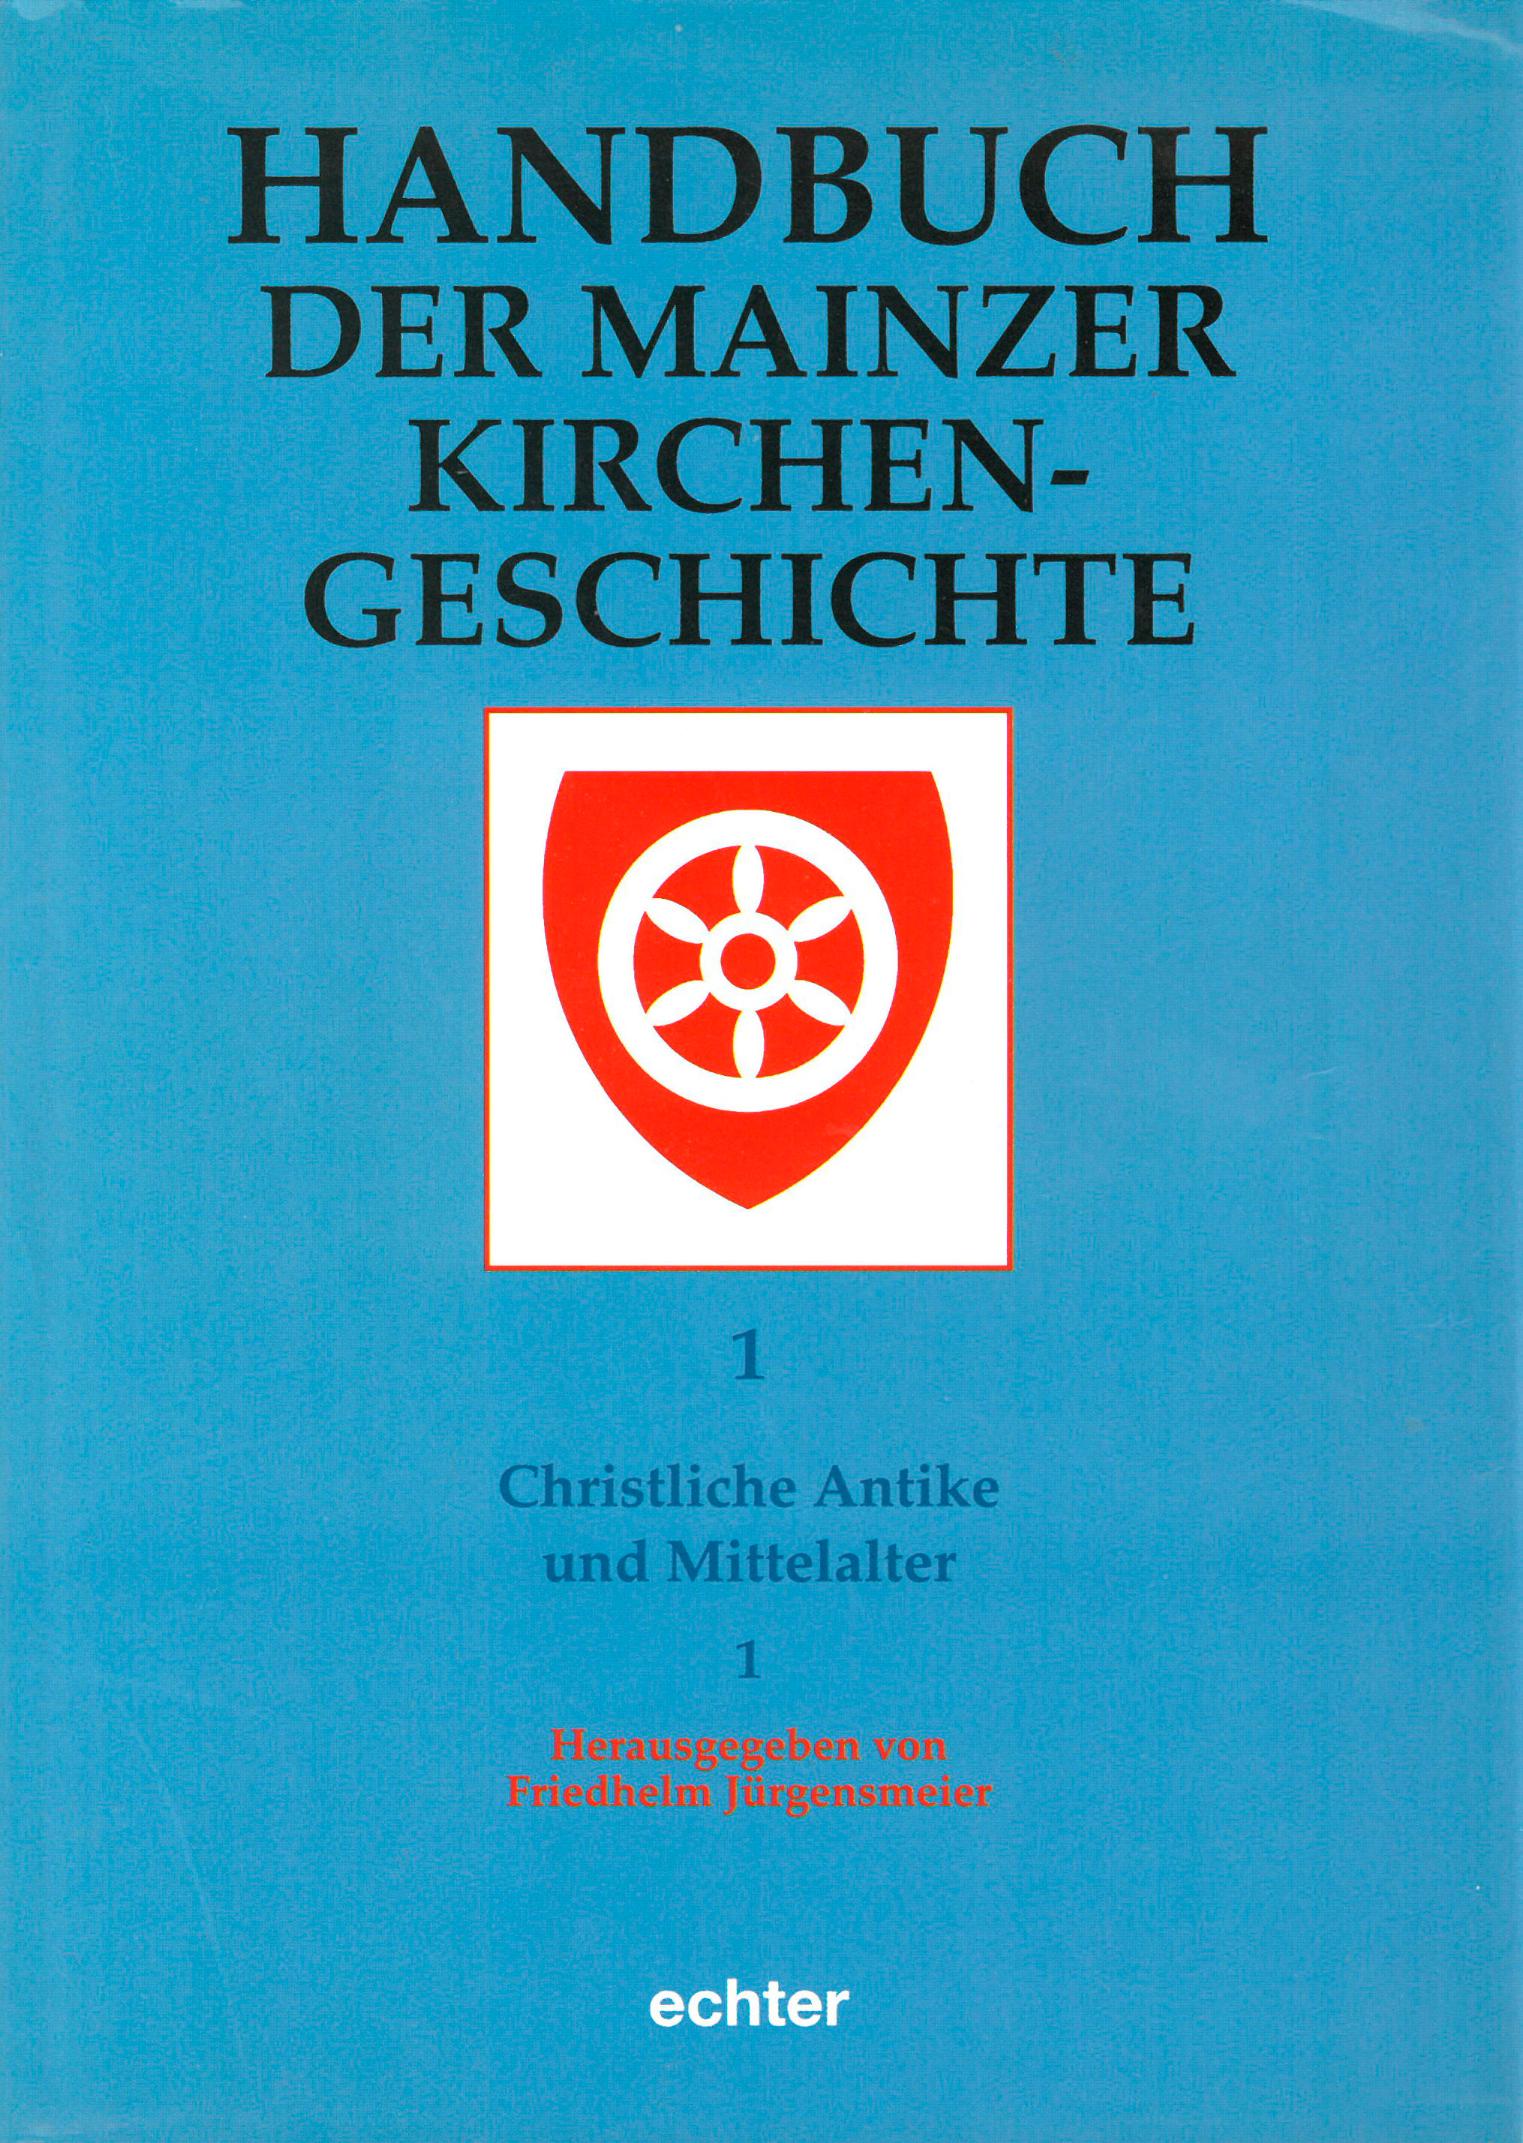 Handbuch I (c) Echter / IMKG